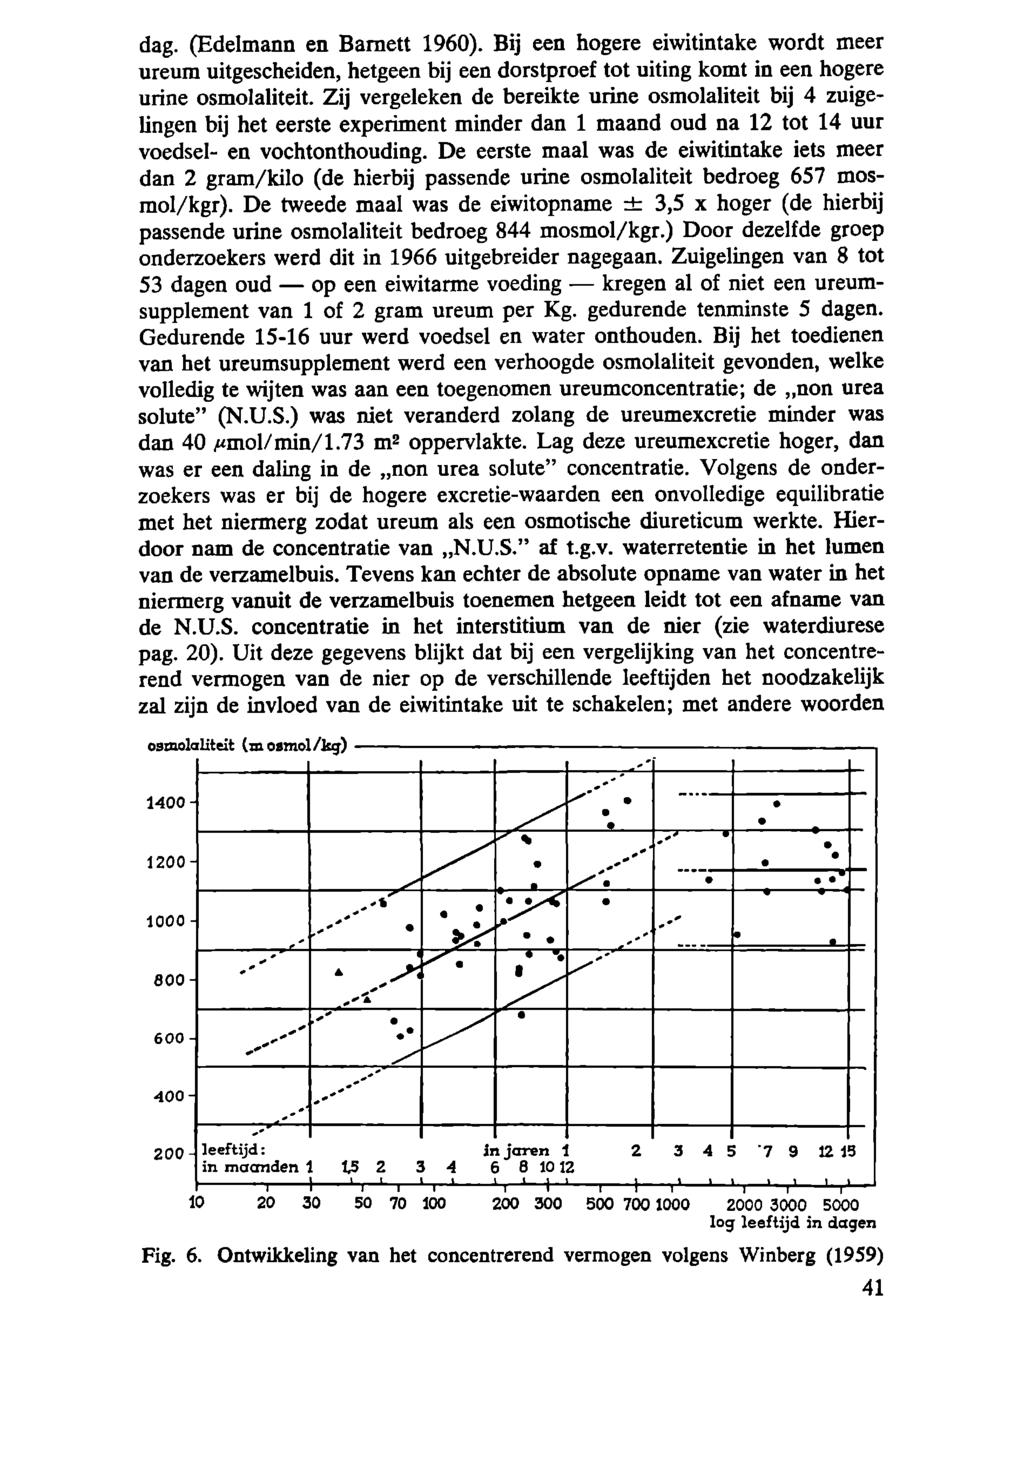 dag. (Edelmann en Bamett 1960). Bij een hogere eiwitintake wordt meer ureum uitgescheiden, hetgeen bij een dorstproef tot uiting komt in een hogere urine osmolaliteit.